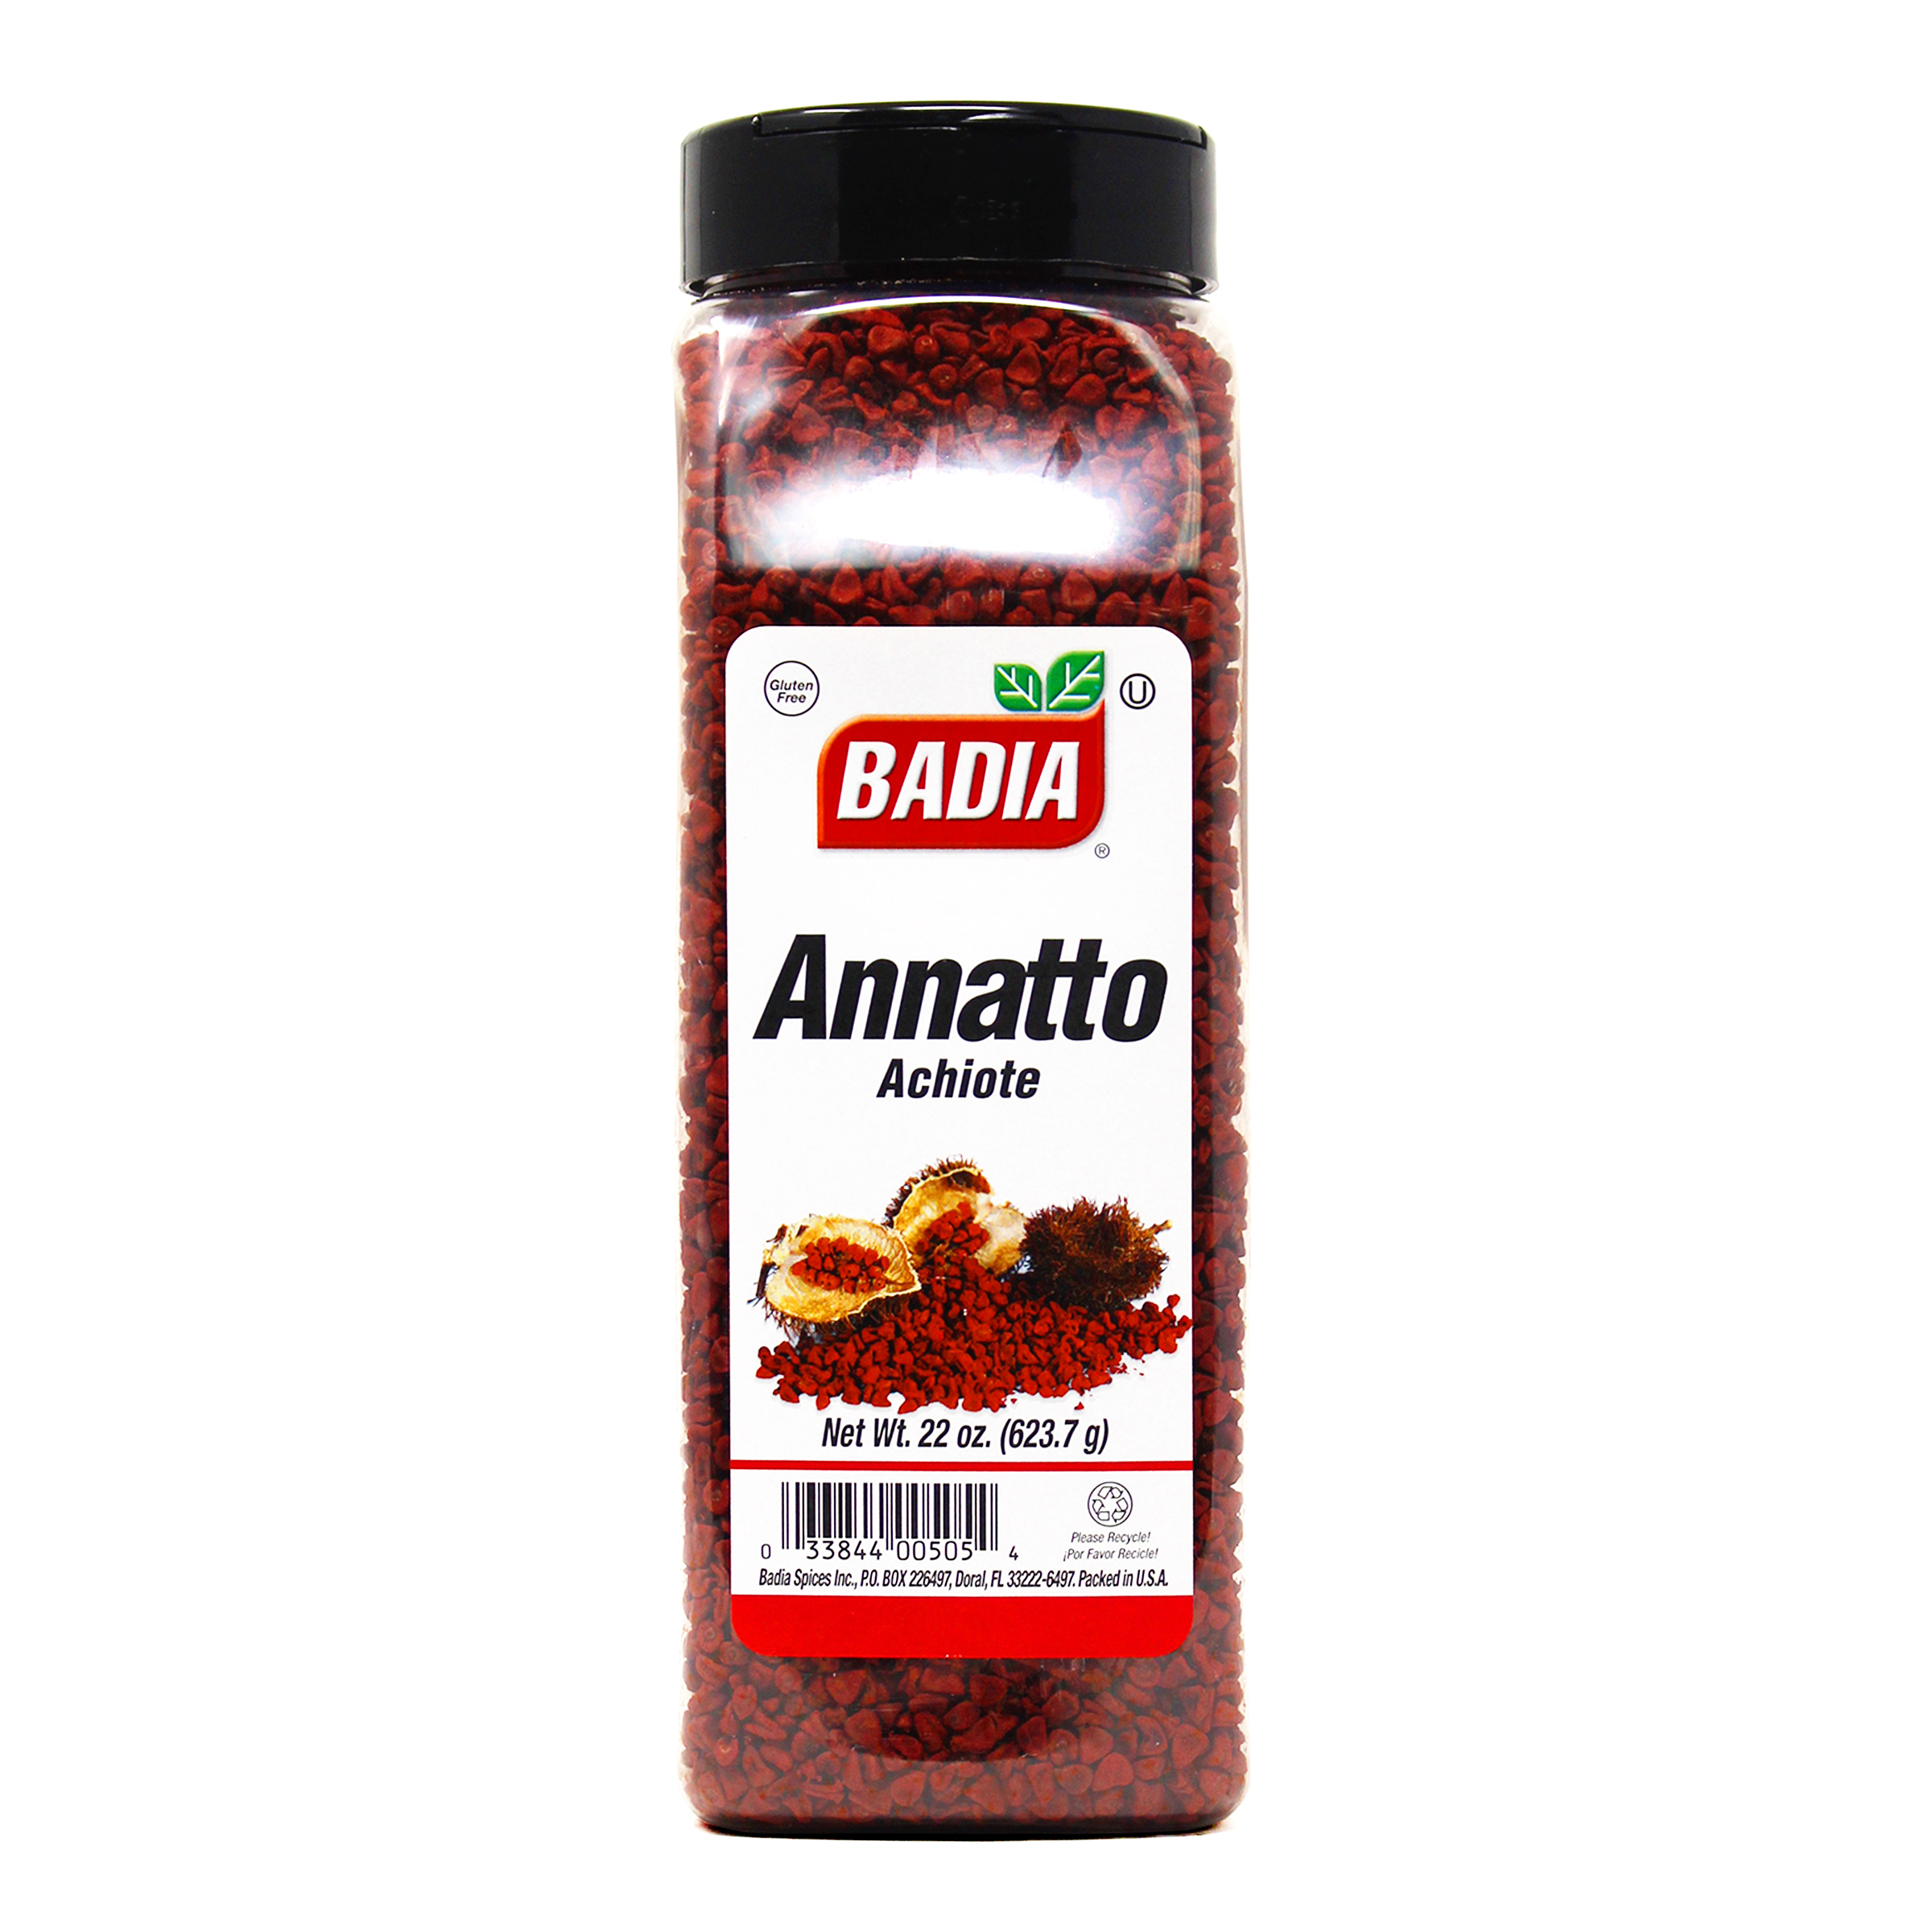 Is Annatto Spicy